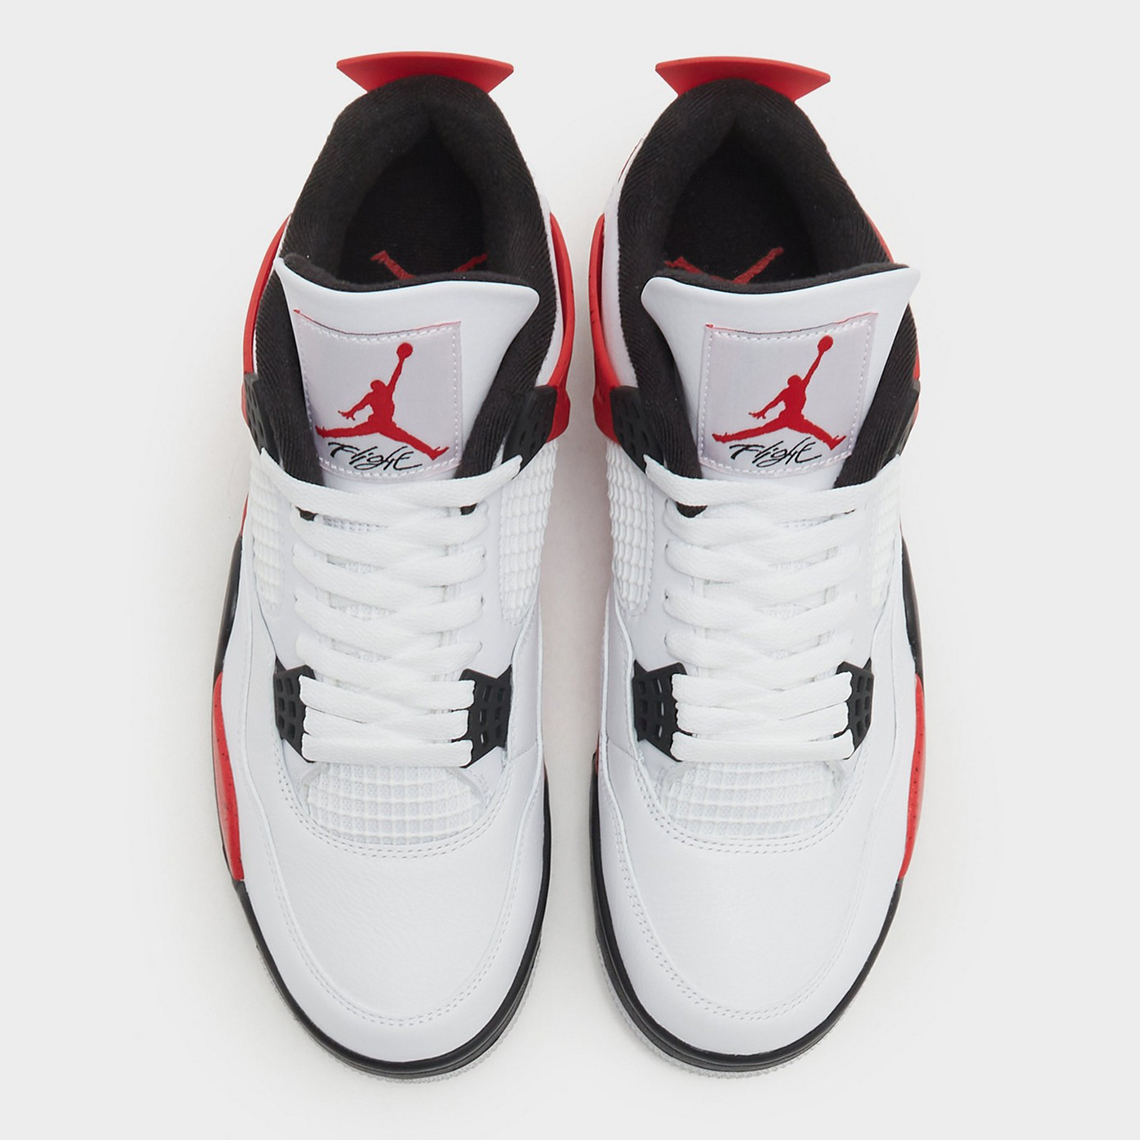 Red Cement Air Jordan 4 Release Date 3